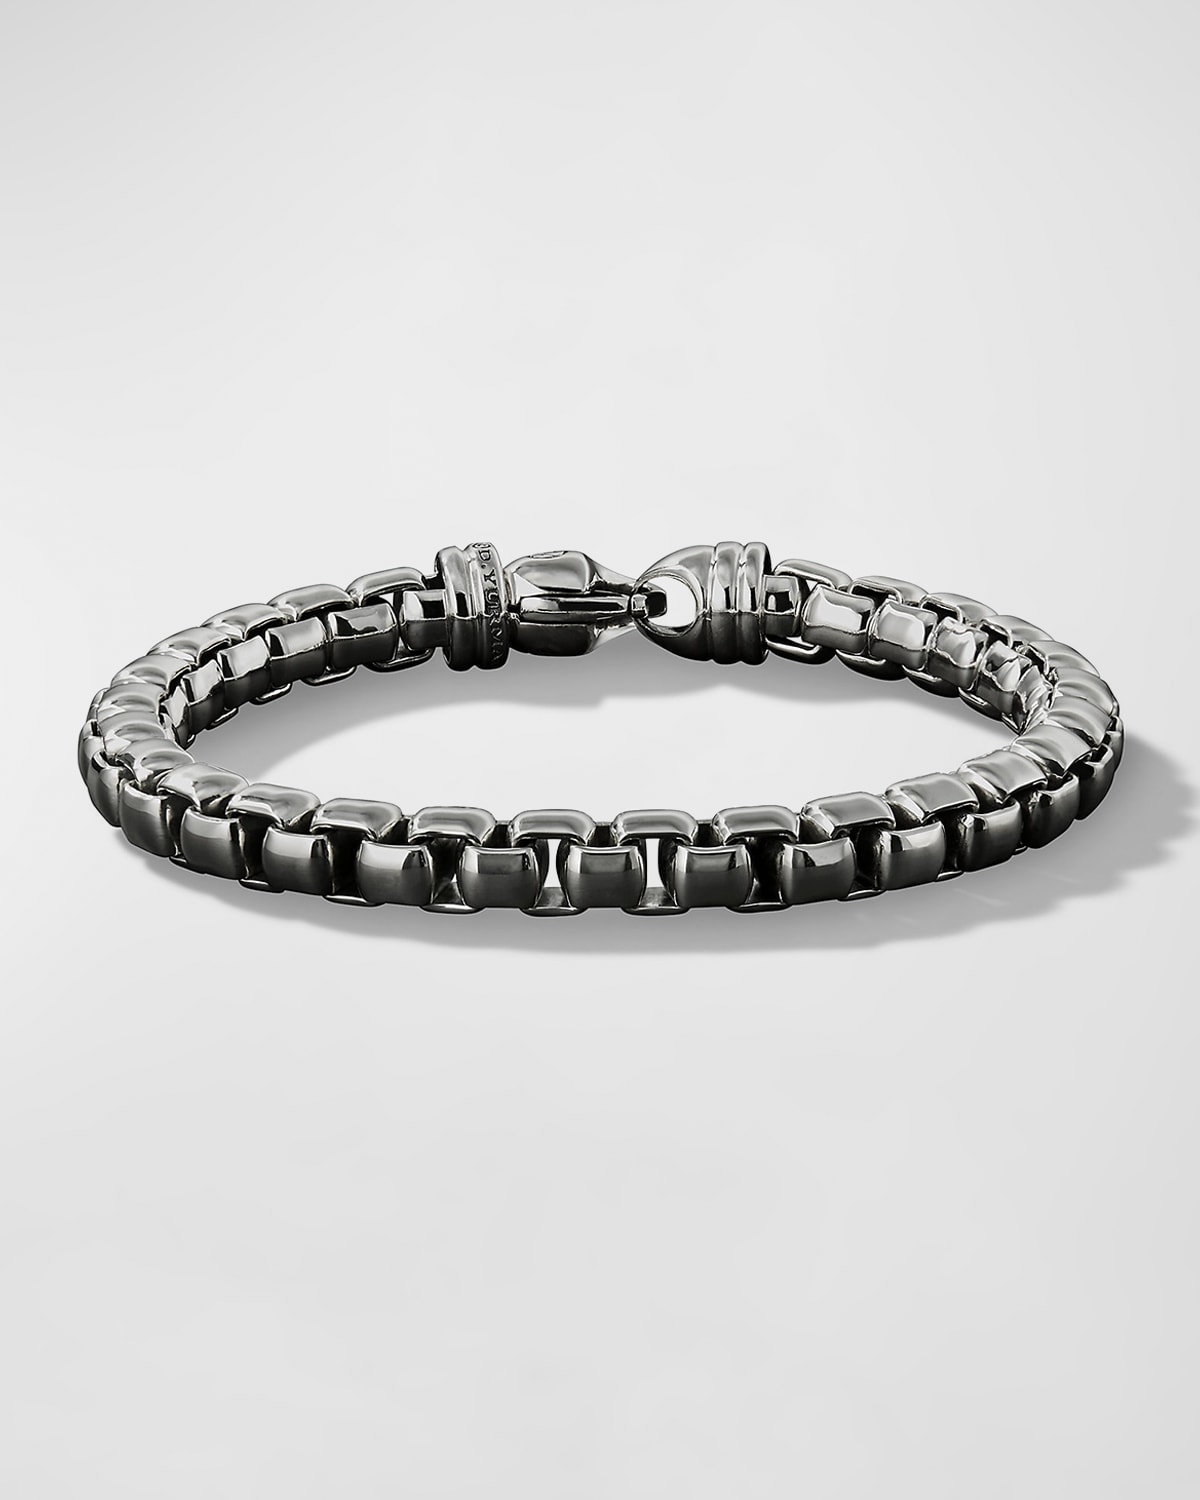 Men's Box Chain Bracelet in Silver, 5mm, Size L